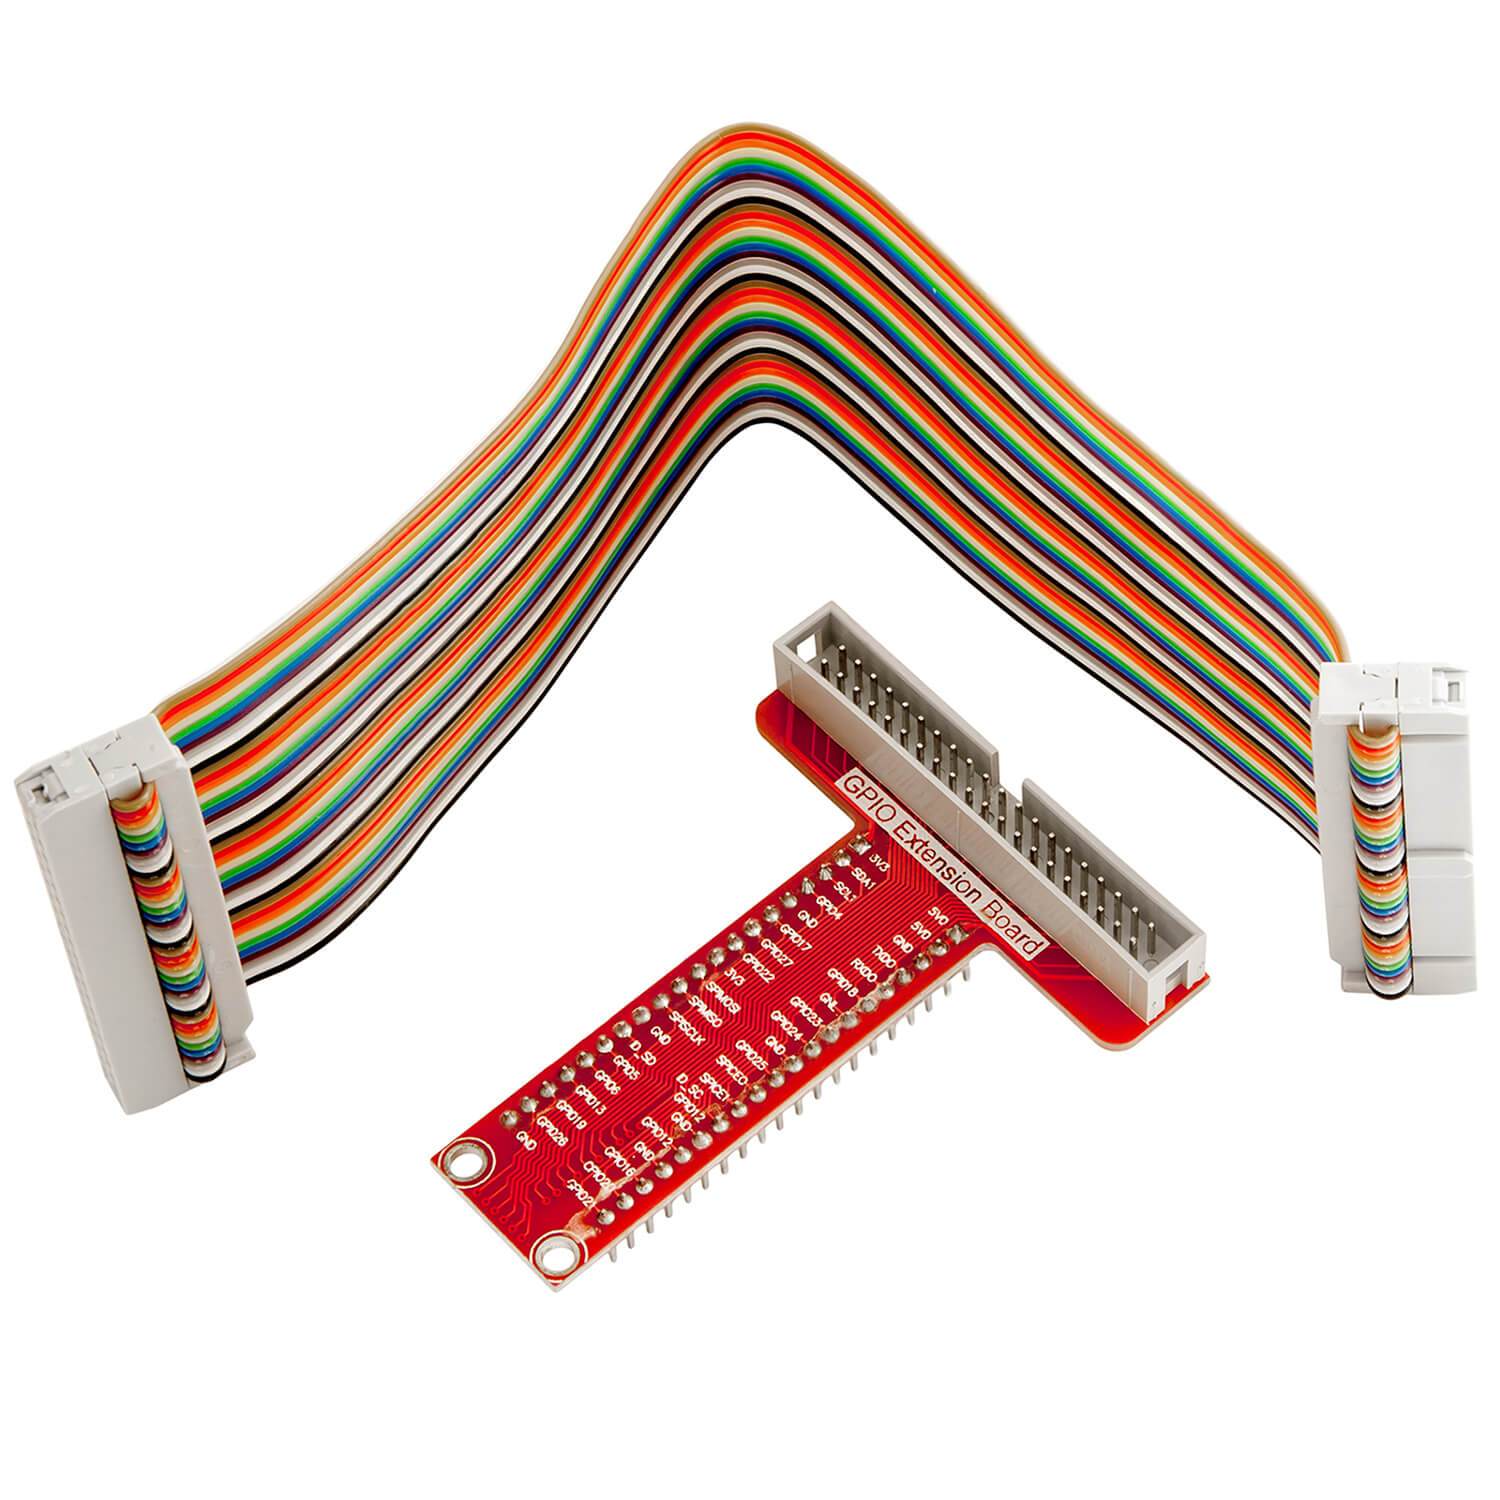 40 Pins GPIO Breakout Board und kompatibles Flachband Ribbon Kabel für Raspberry Pi RaspberryPi Zubehör AZ-Delivery 1X Breakout 